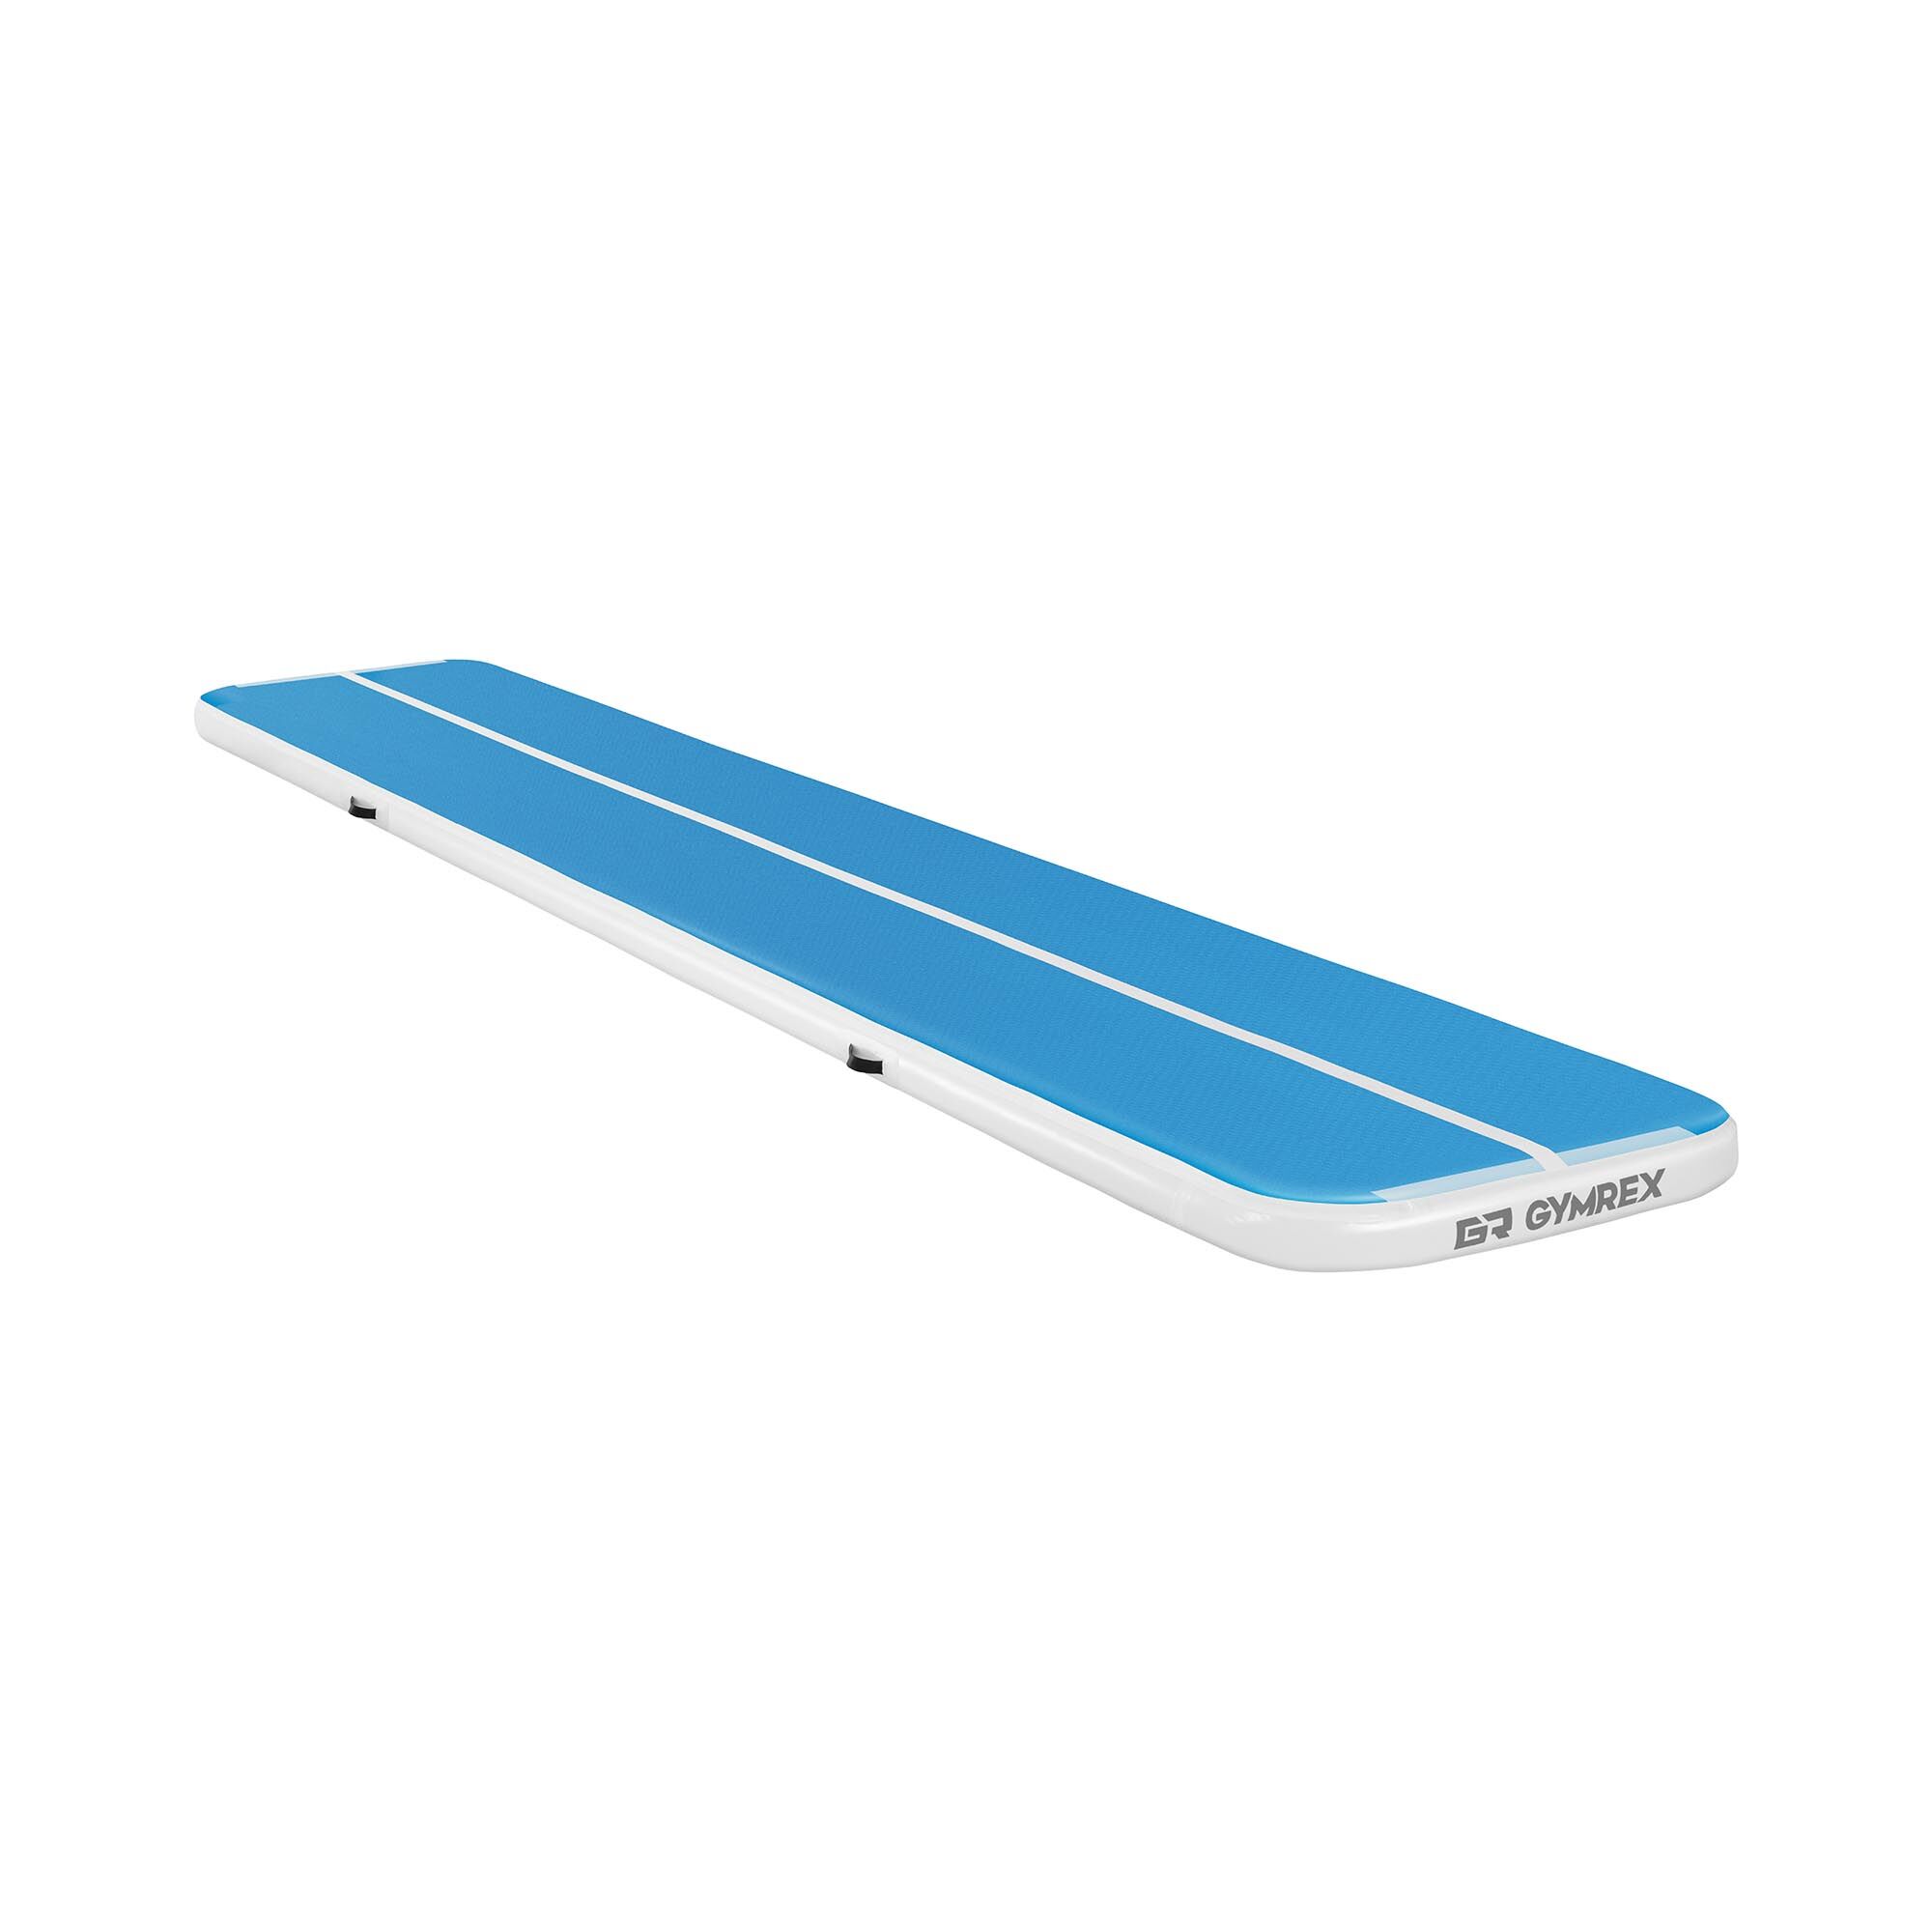 Gymrex Aufblasbare Turnmatte - Airtrack - 600 x 100 x 10 cm - 210 kg - blau/weiß